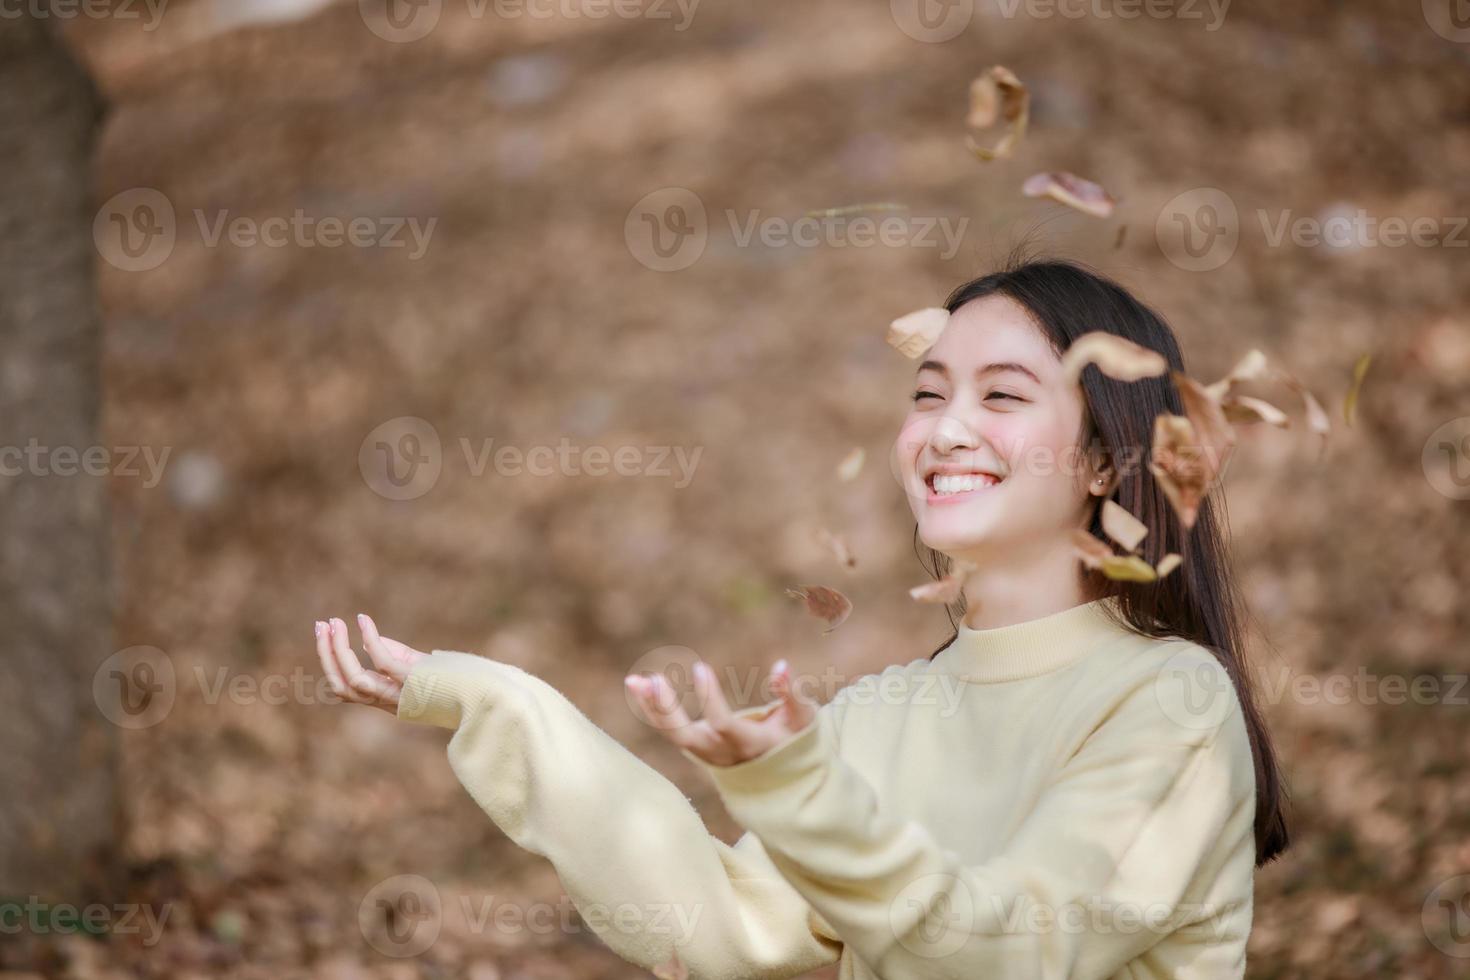 linda mulher asiática sorrindo, garota feliz e vestindo roupas quentes, inverno e outono retrato ao ar livre no parque foto